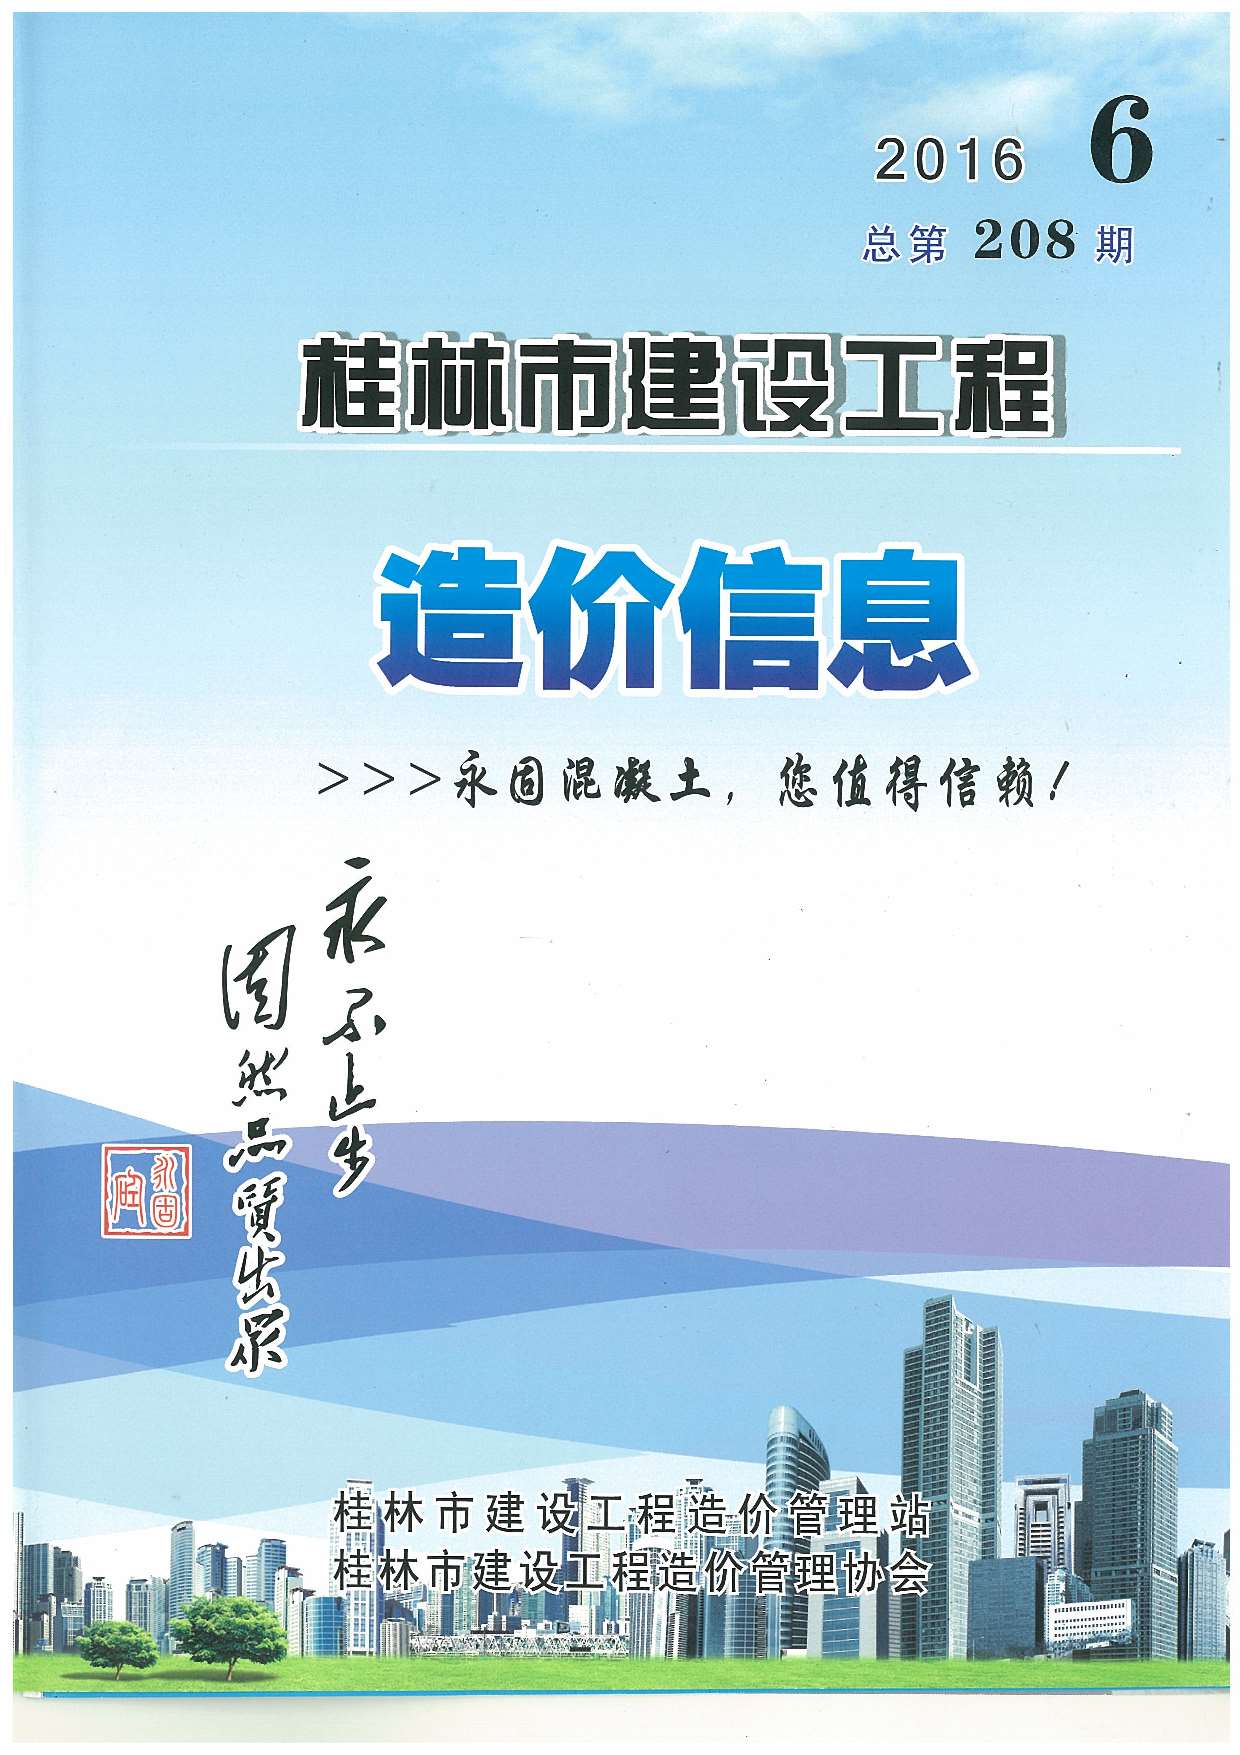 桂林市2016年6月建设工程造价信息